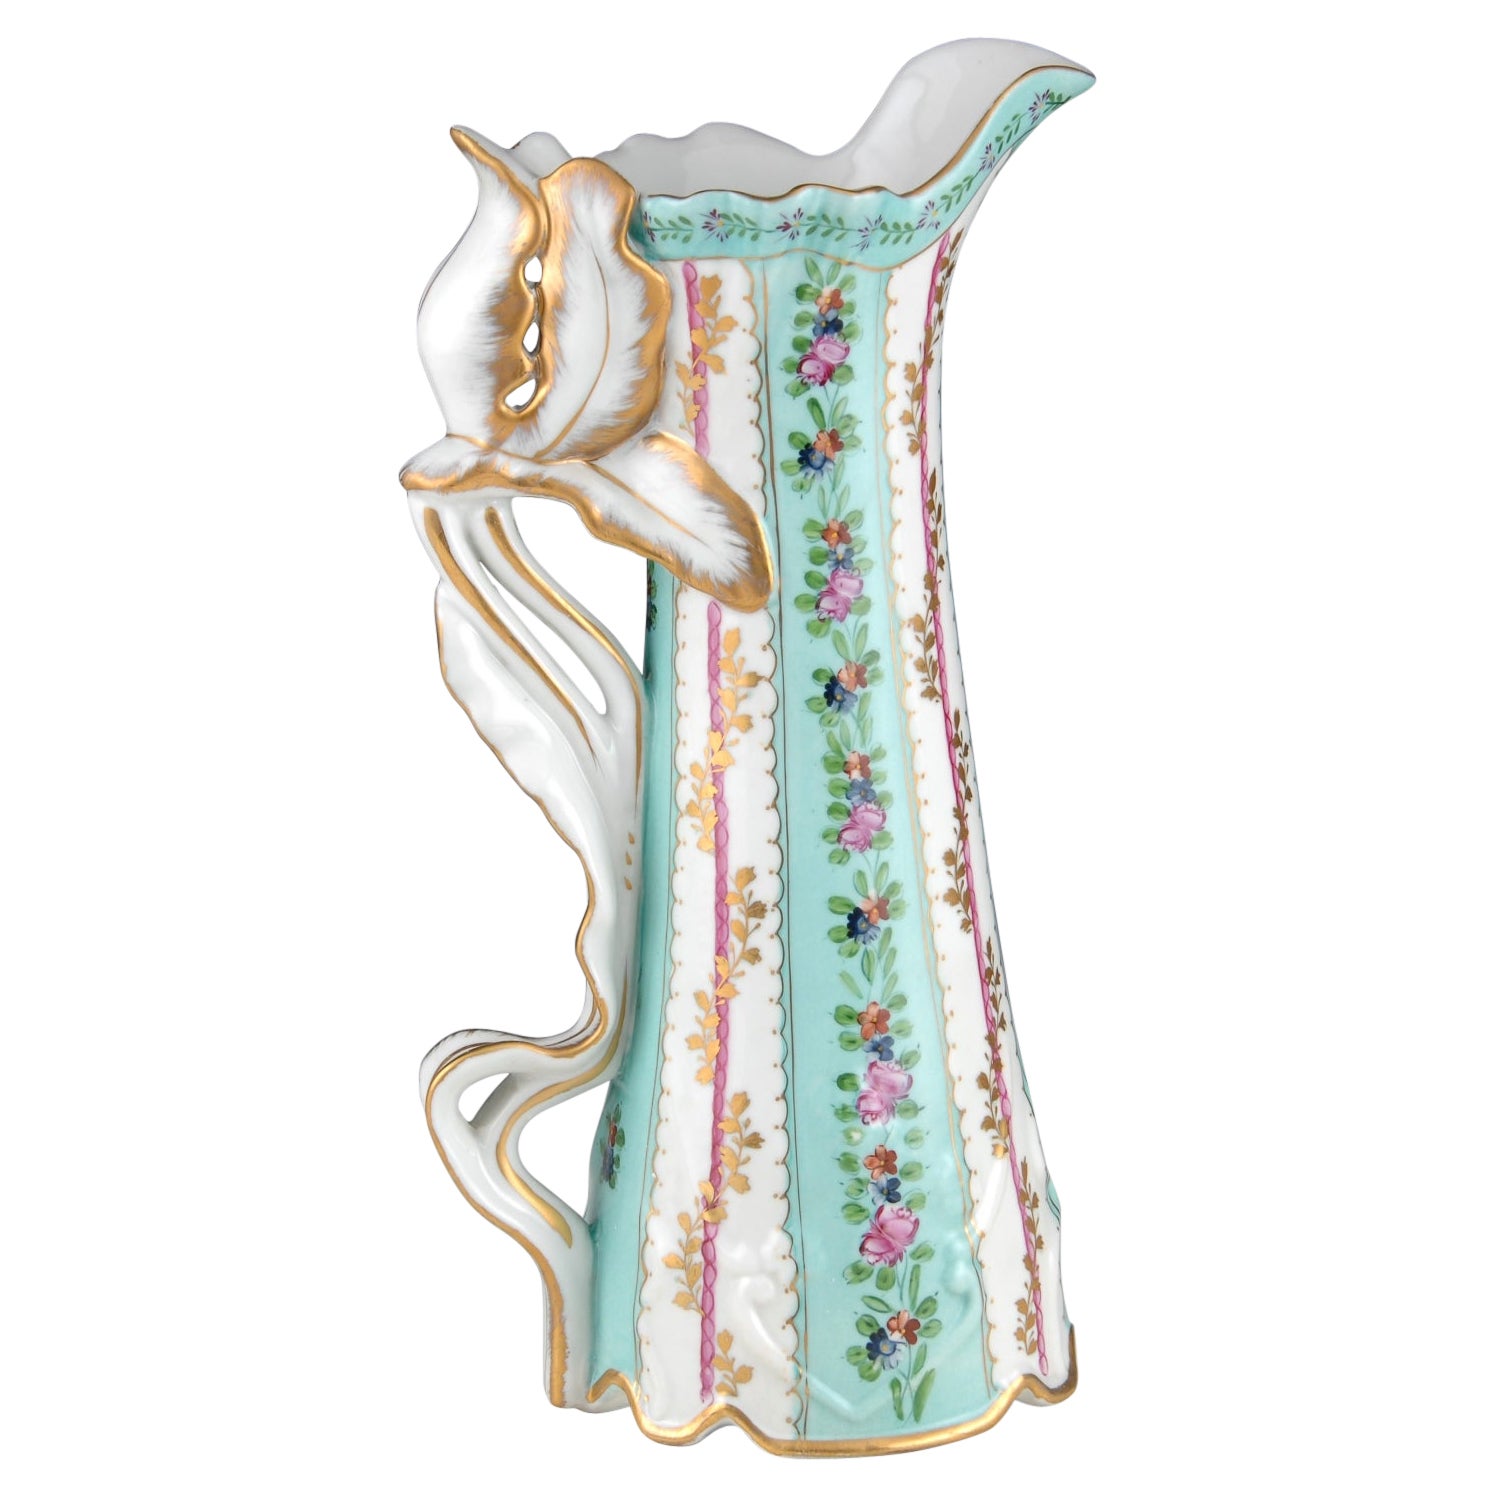 Enameled porcelain jug. Inspired by Sèvres and Art Nouveau models. 